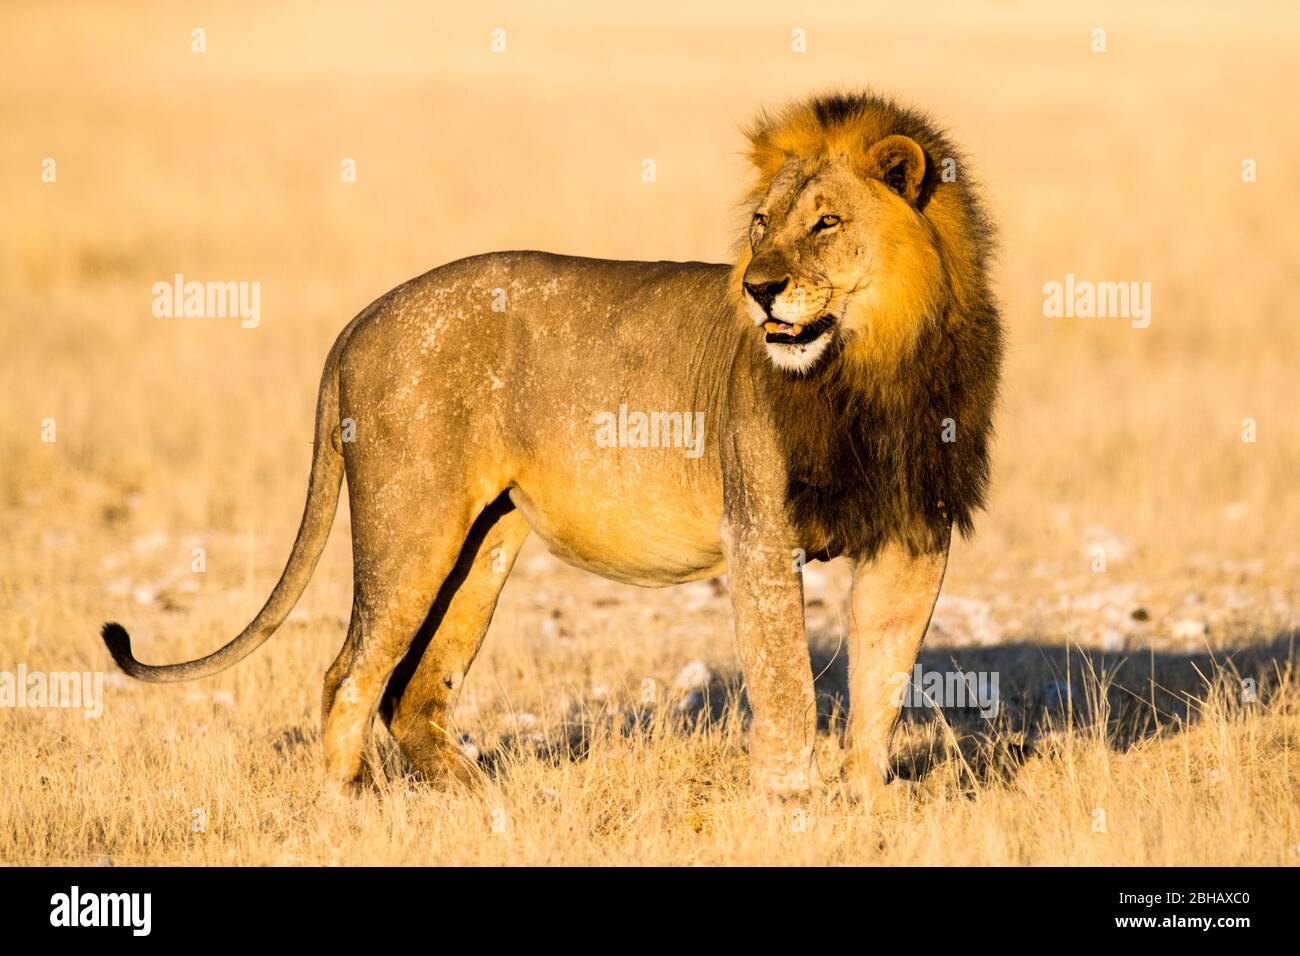 Lion (Panthera leo) debout sur herbe, Namibie Banque D'Images